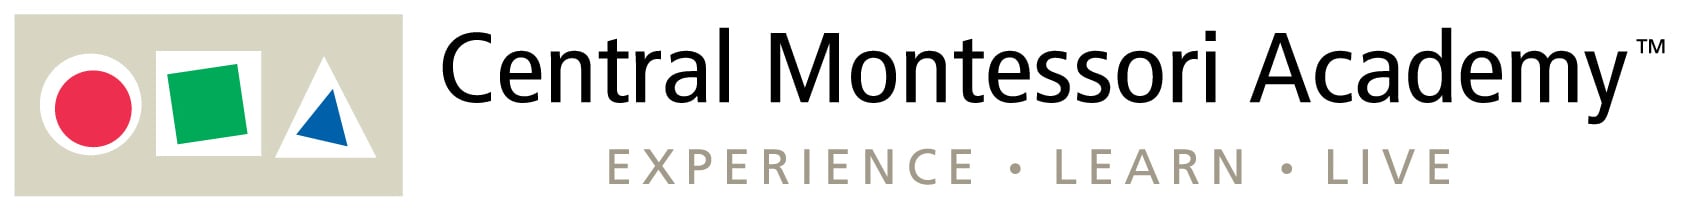 Central Montessori Academy logo